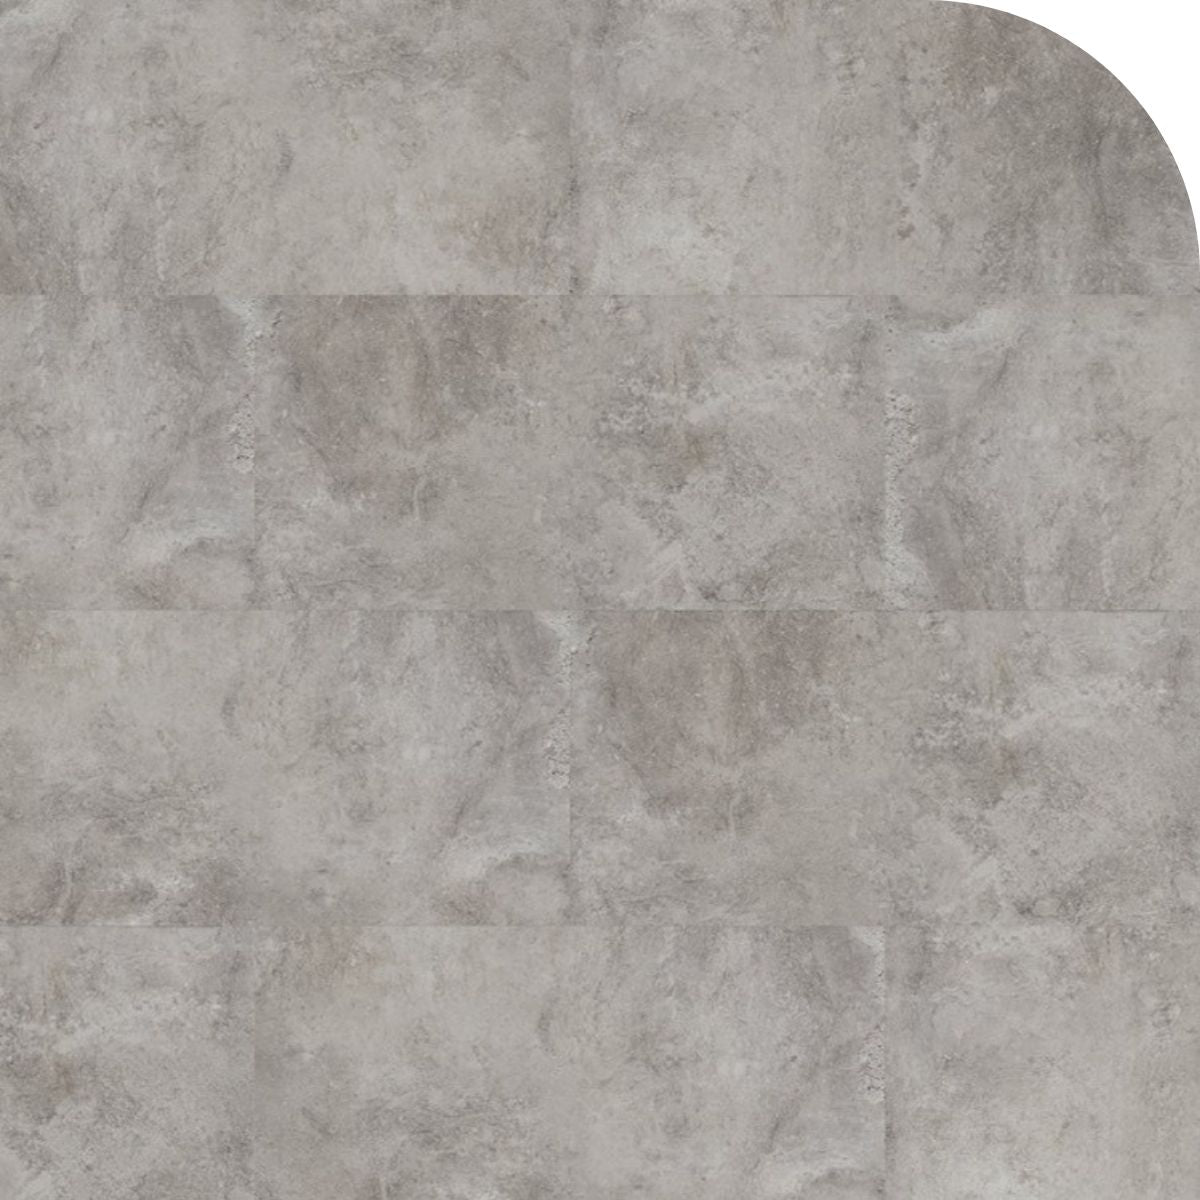 Barth und Co. - SPC Designboden Brick Design - Klick-Vinylboden inkl. Trittschalldämmung - Slate Stone - Frontansicht